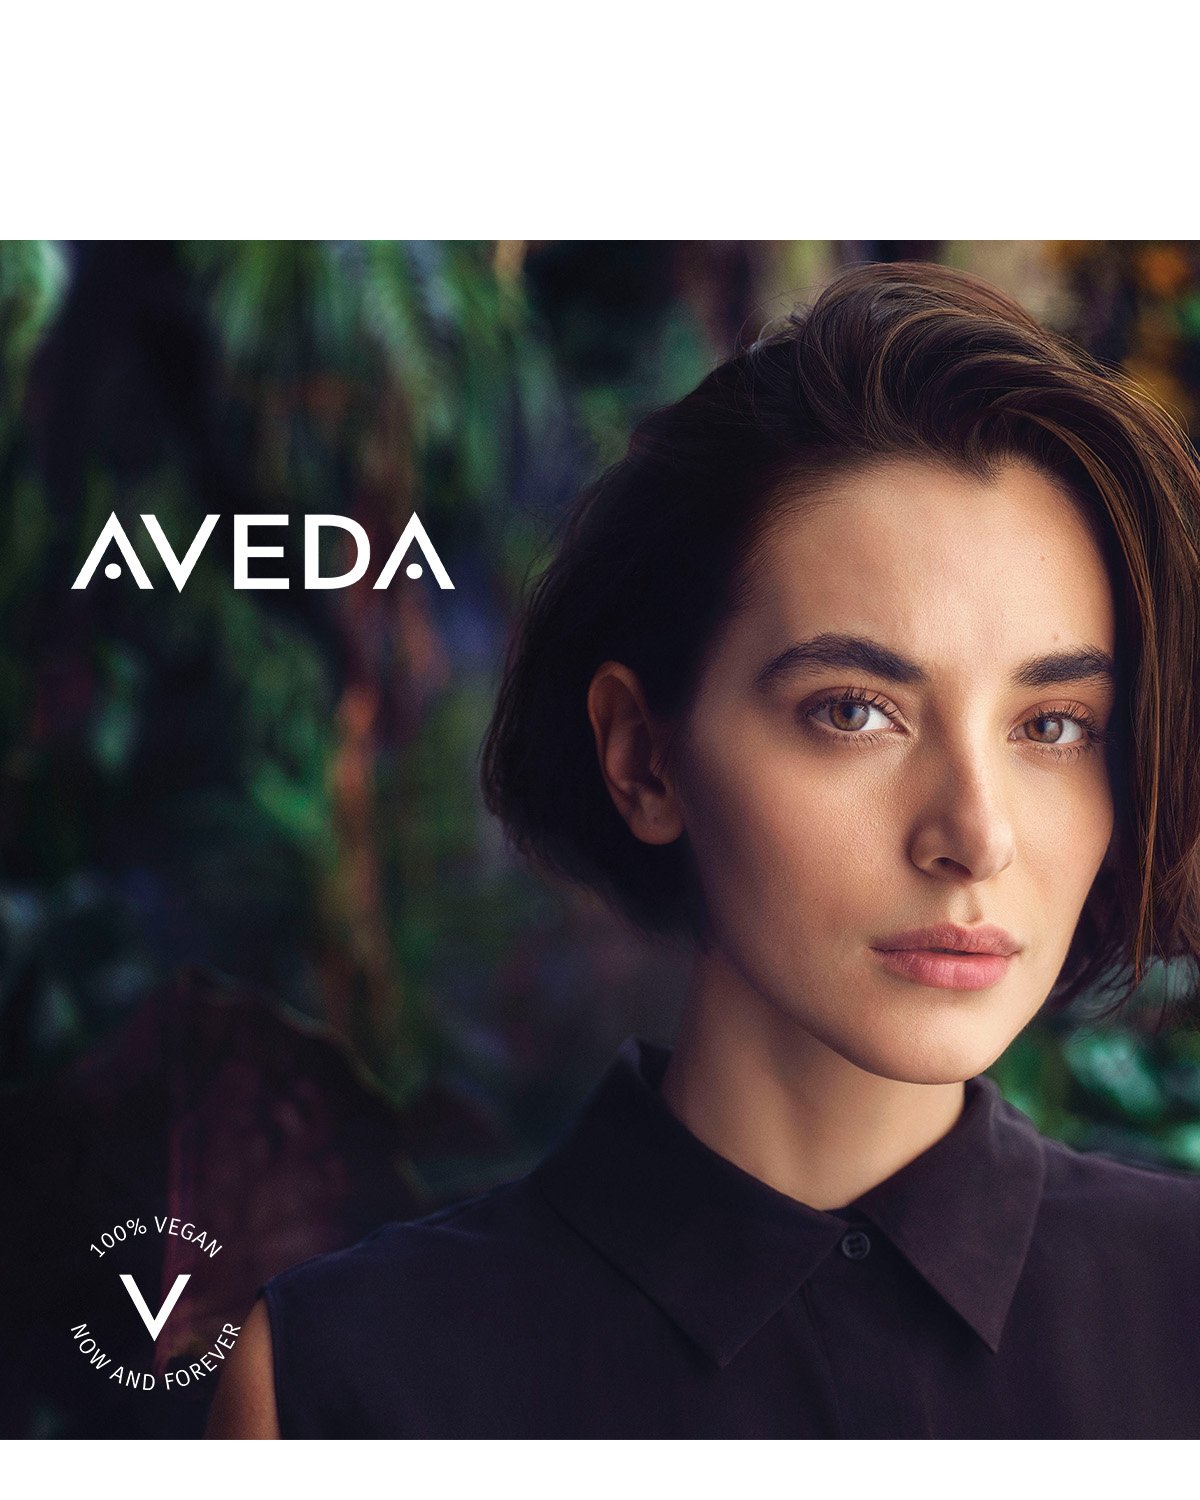 K nákupom značky Aveda nad 49 € intenzívne hydratačný krém na ruky ako darček.